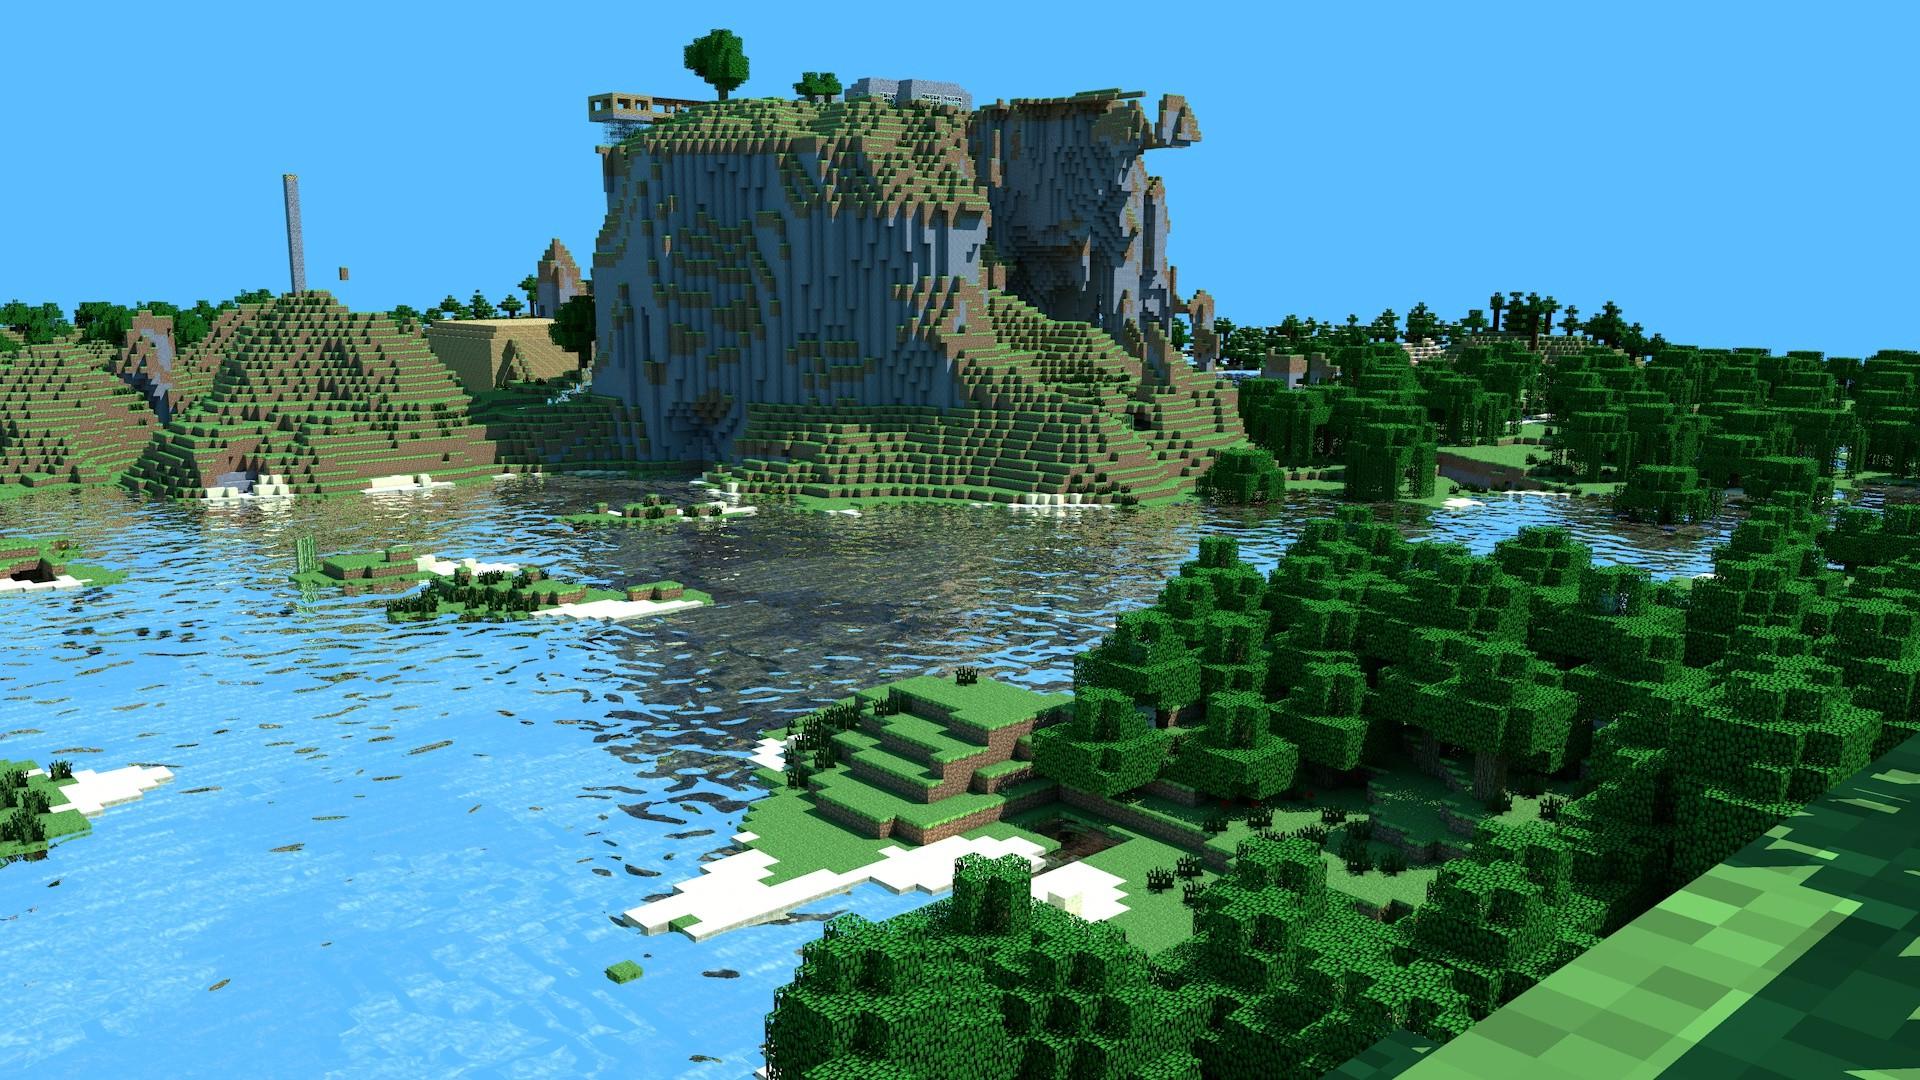 Minecraft Landscape HD Wallpaper | 1920x1080 | ID:36949